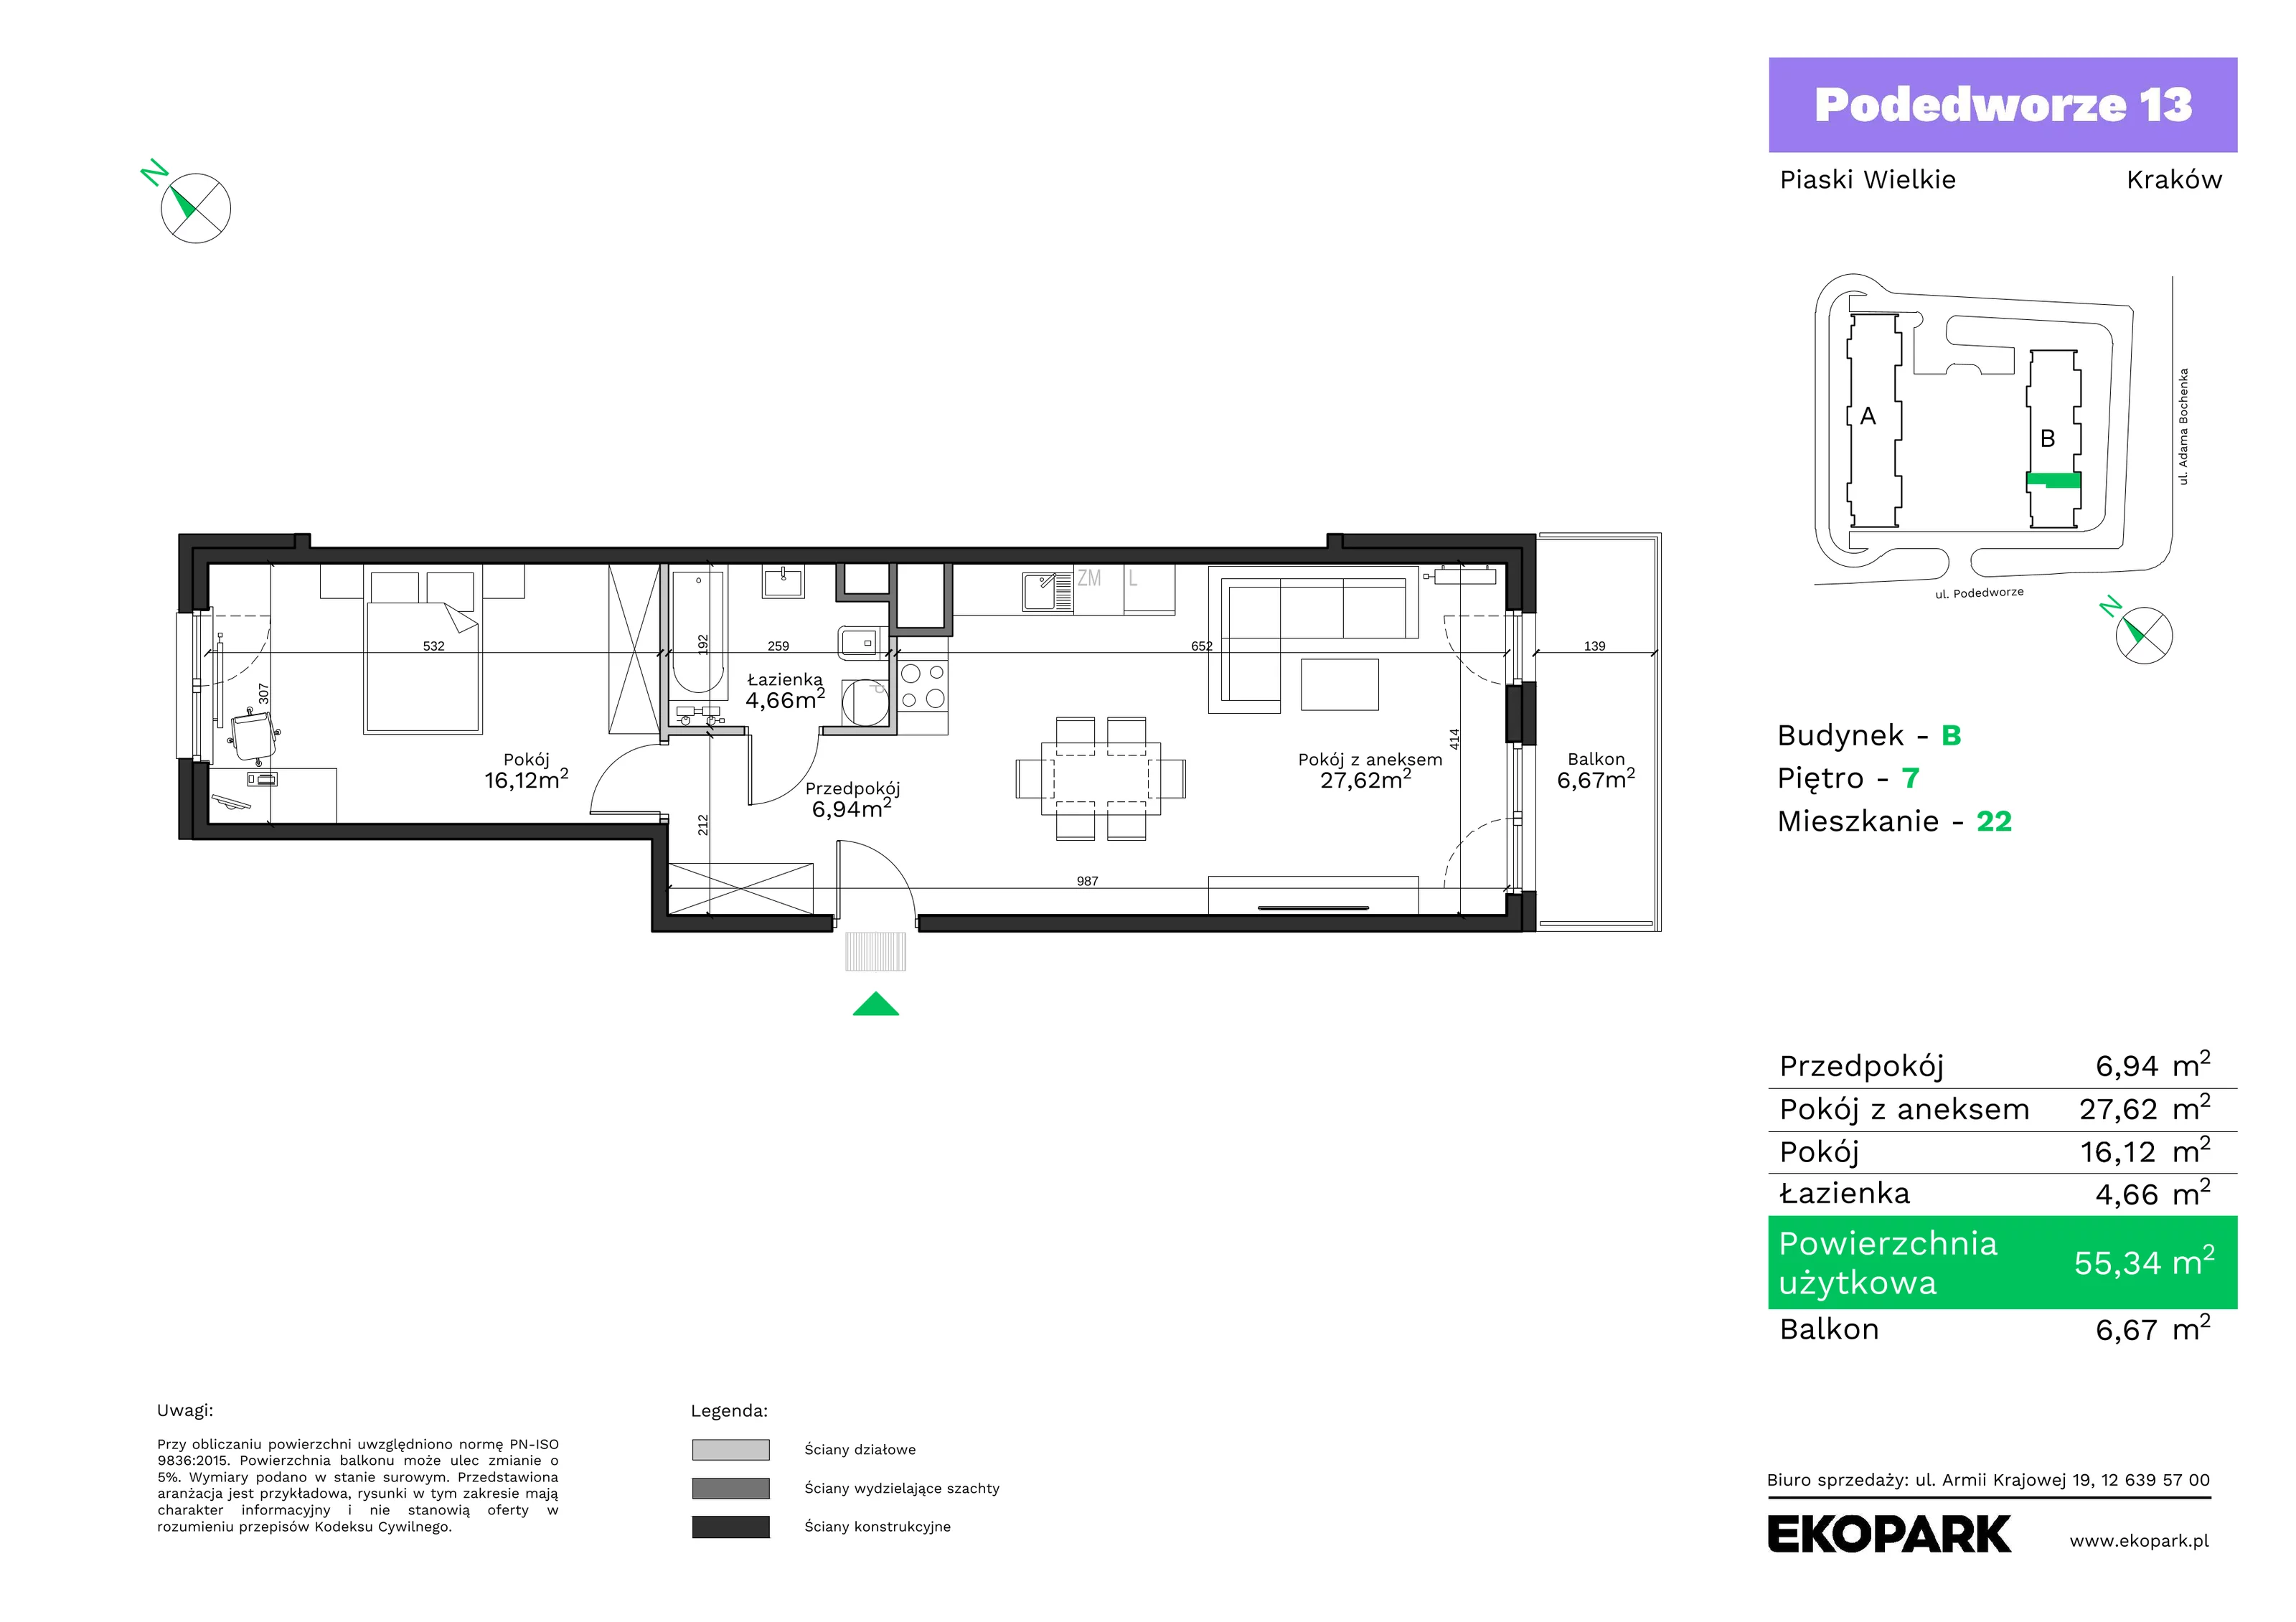 Mieszkanie 55,34 m², piętro 7, oferta nr B22, Podedworze 13, Kraków, Podgórze Duchackie, Piaski Wielkie, ul. Podedworze 13